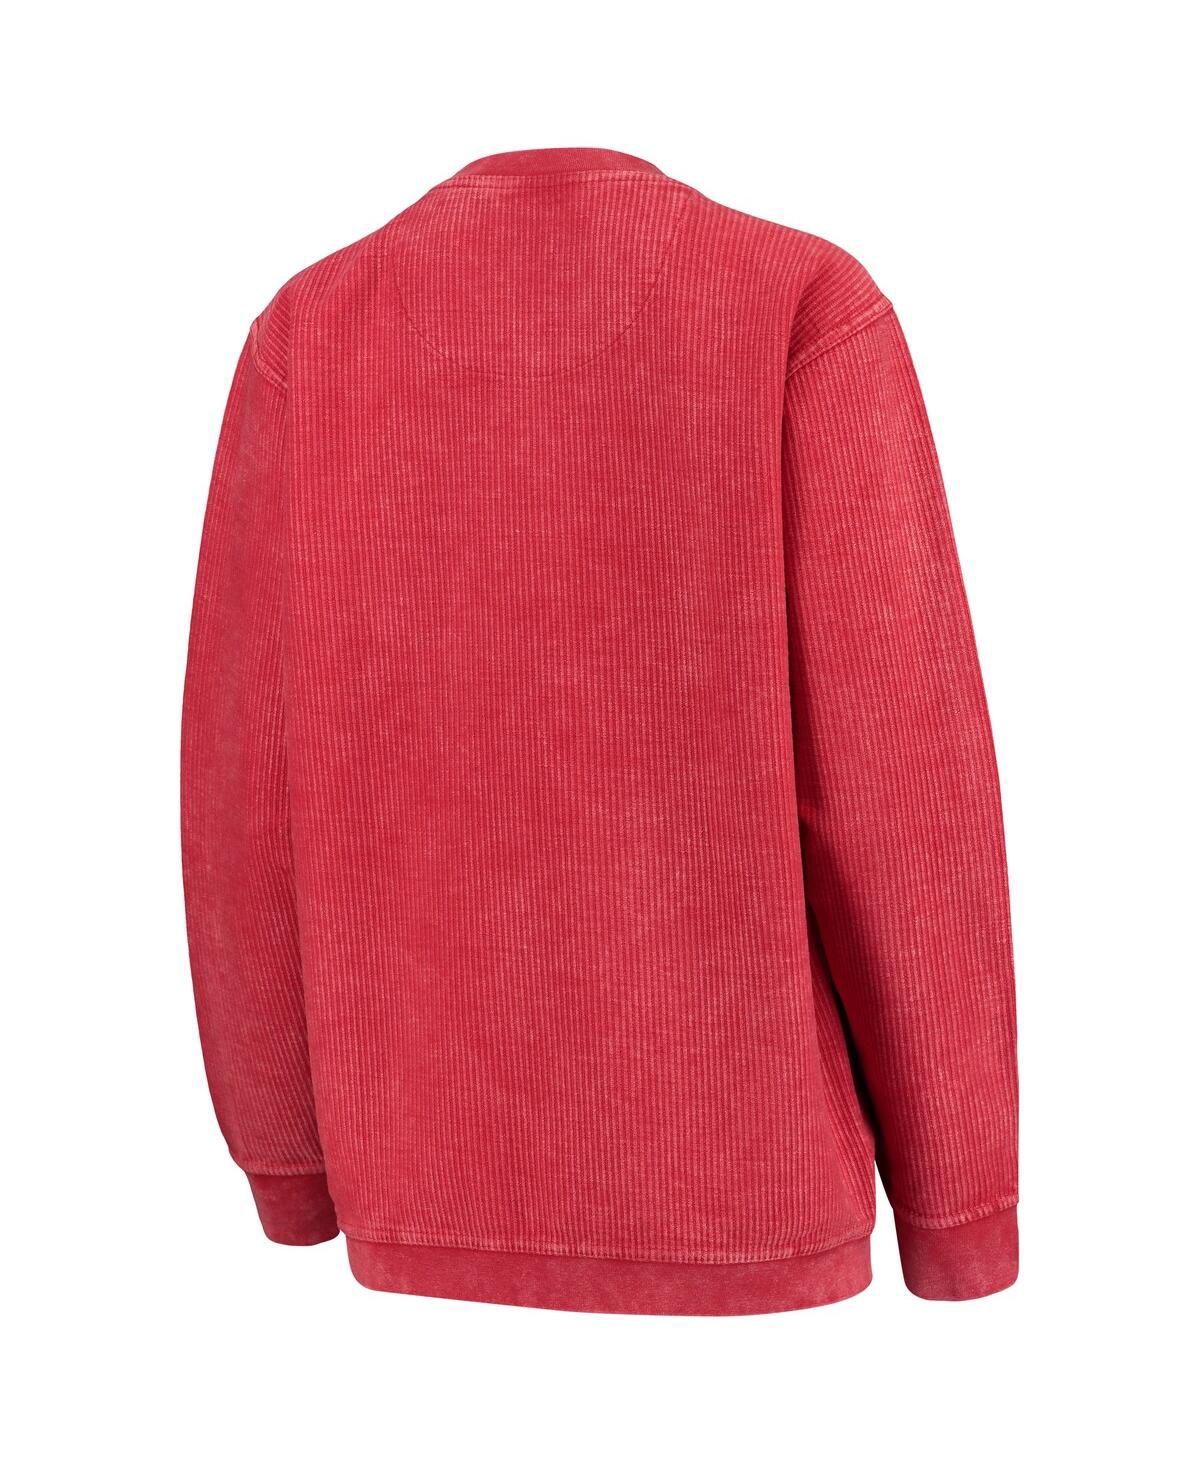 Shop Pressbox Women's  Red Wisconsin Badgers Comfy Cord Corduroy Crewneck Sweatshirt